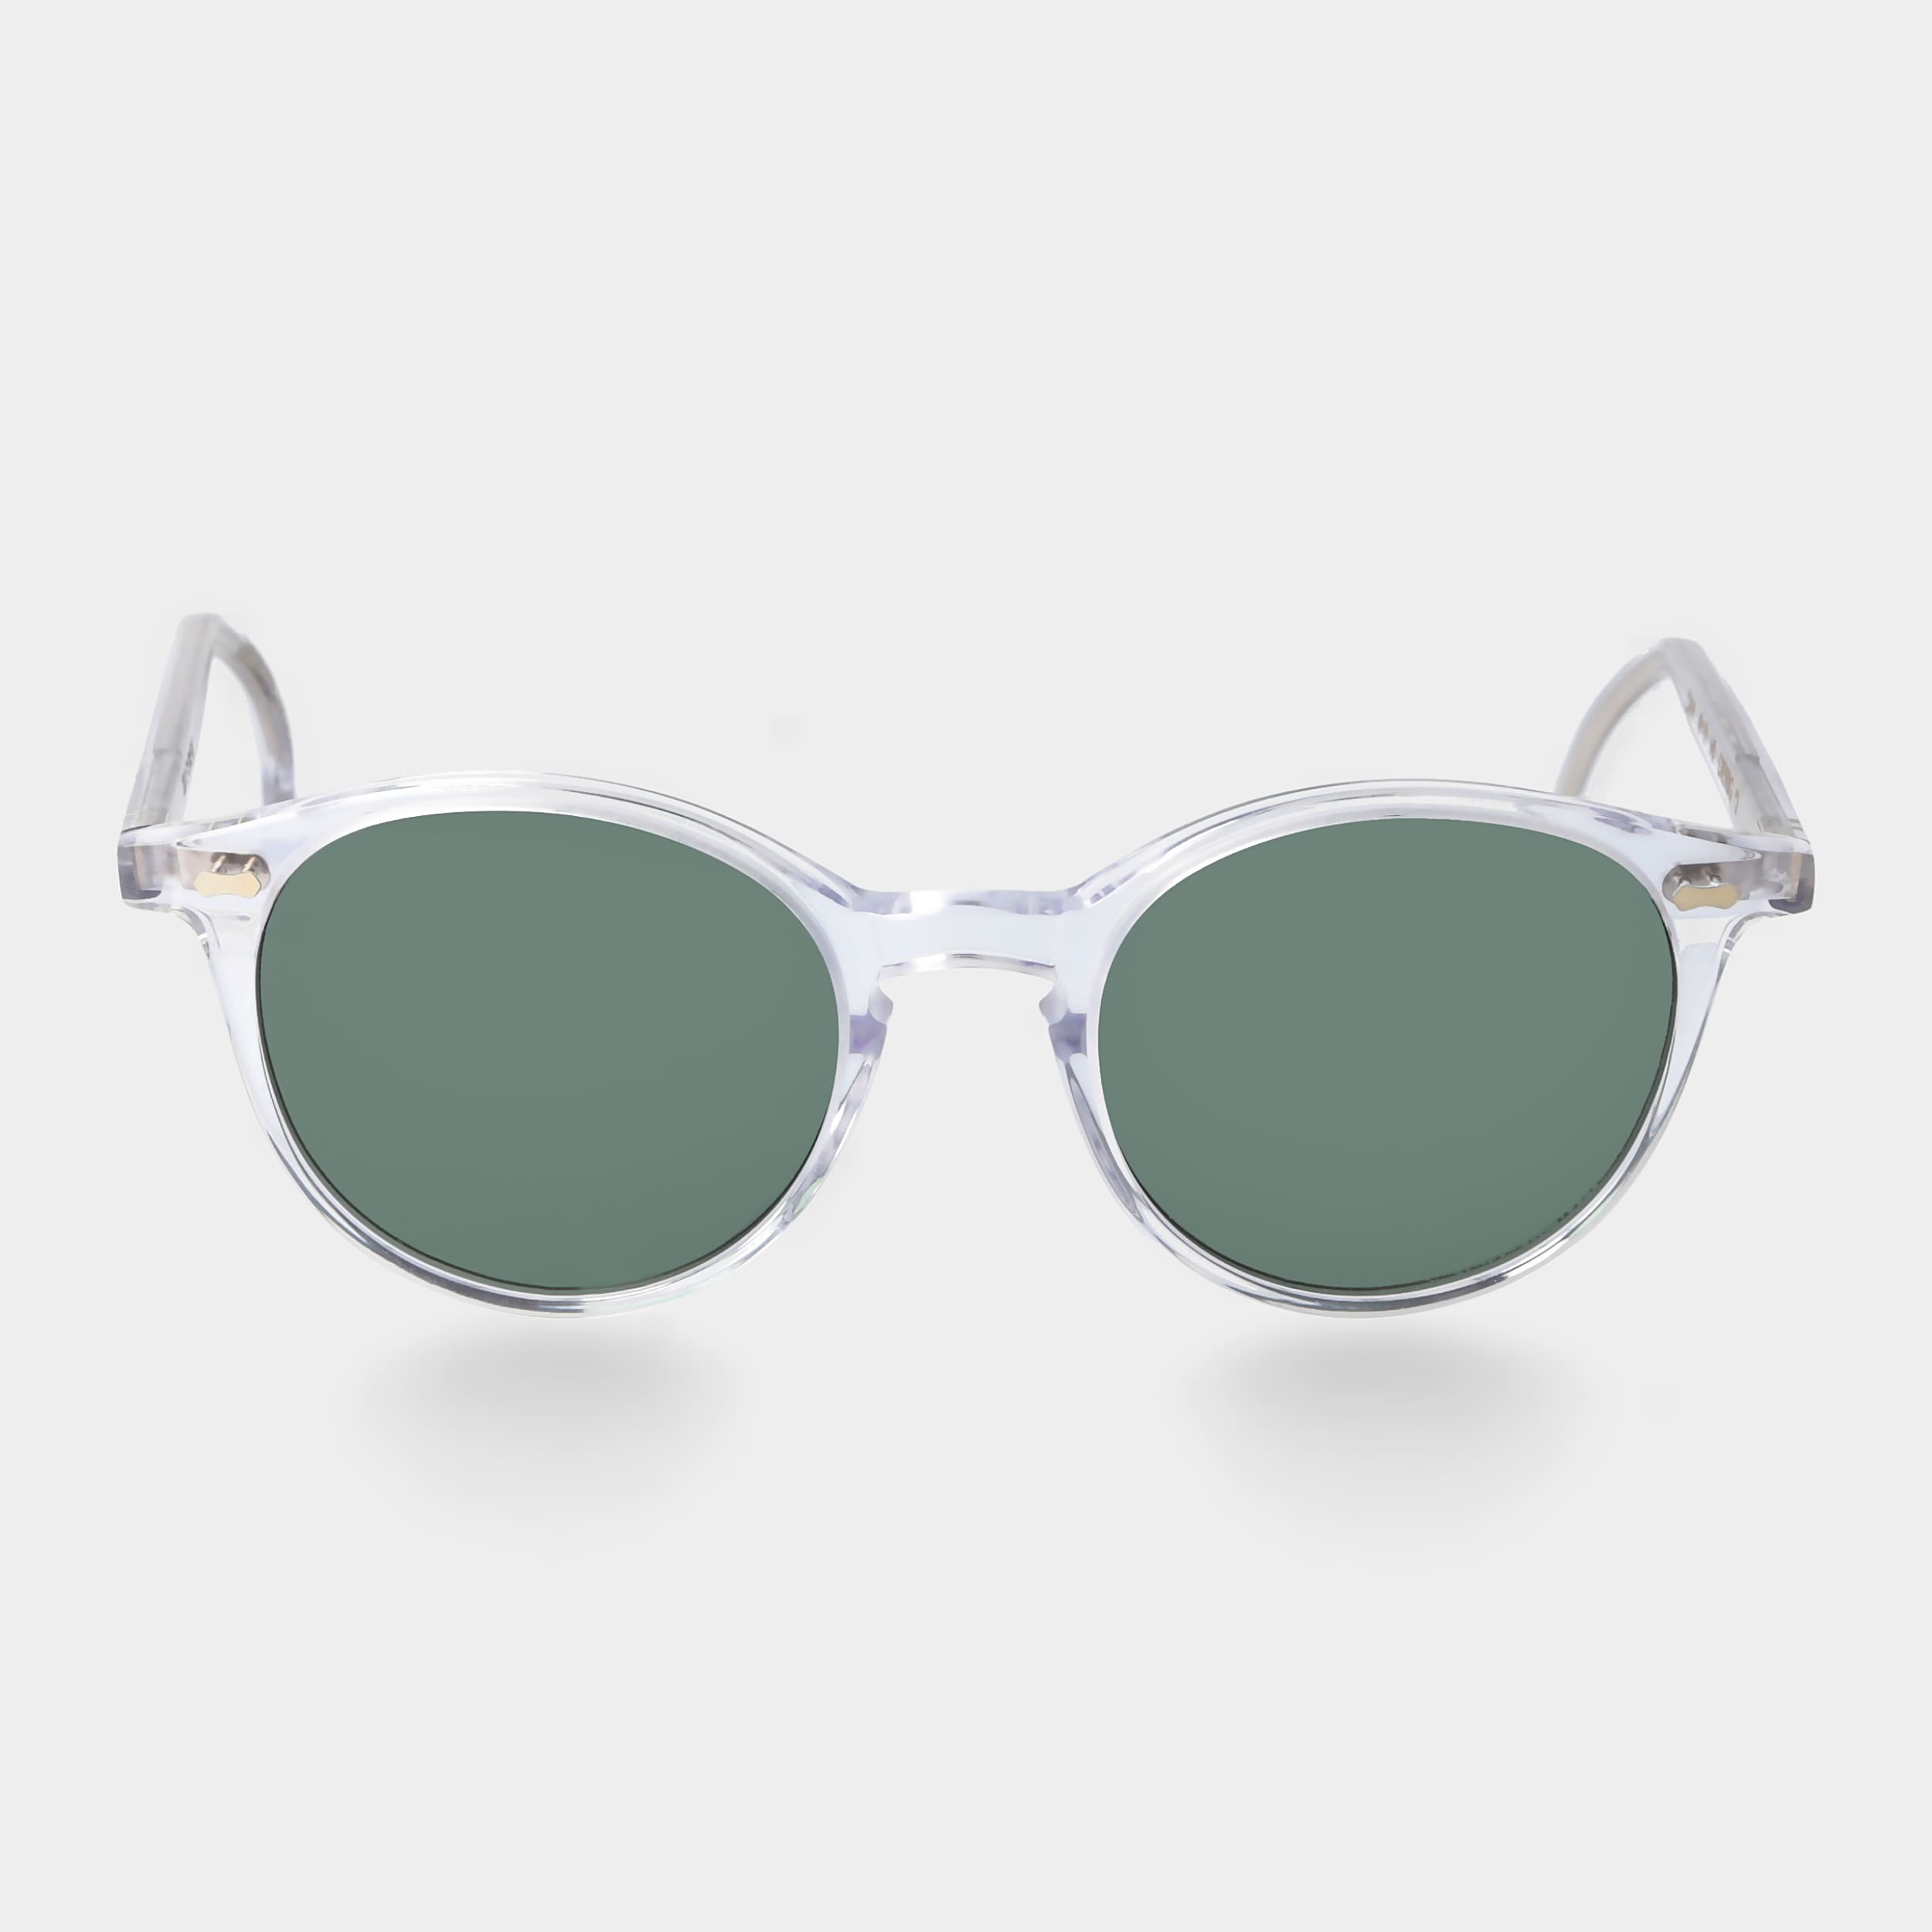 mit Eyewear TBD polarisierten | Sonnenbrille Gläsern klarem und Rahmen